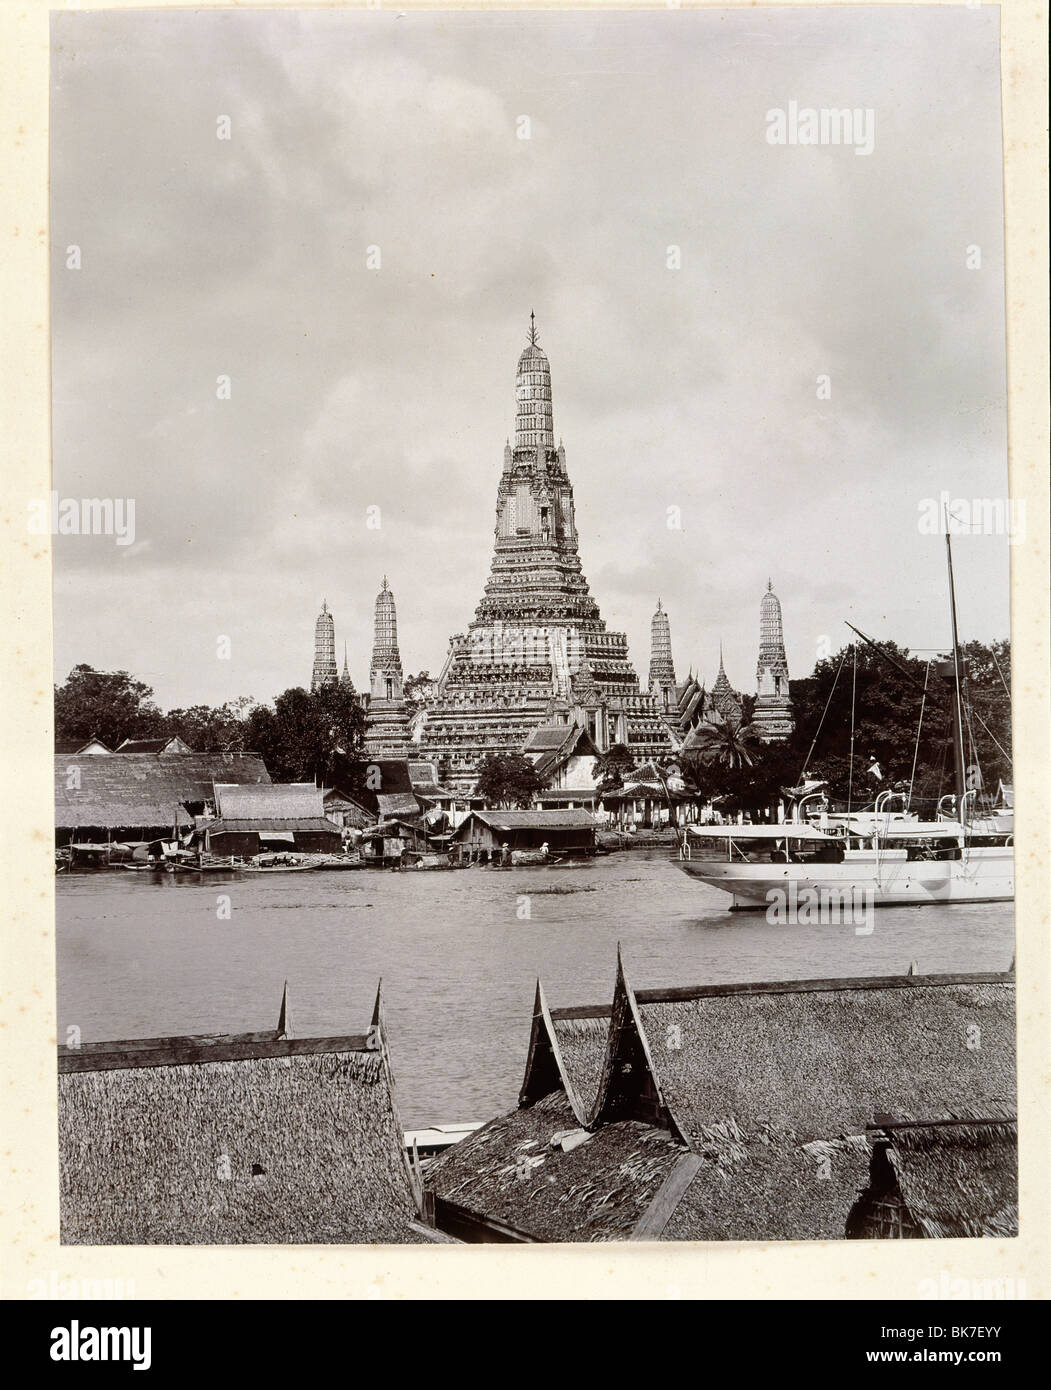 Vieille photo de Wat Arun et Chao Phraya prises par Robert Lenz en 1890, Bangkok, Thaïlande, Asie du Sud-Est, Asie Banque D'Images